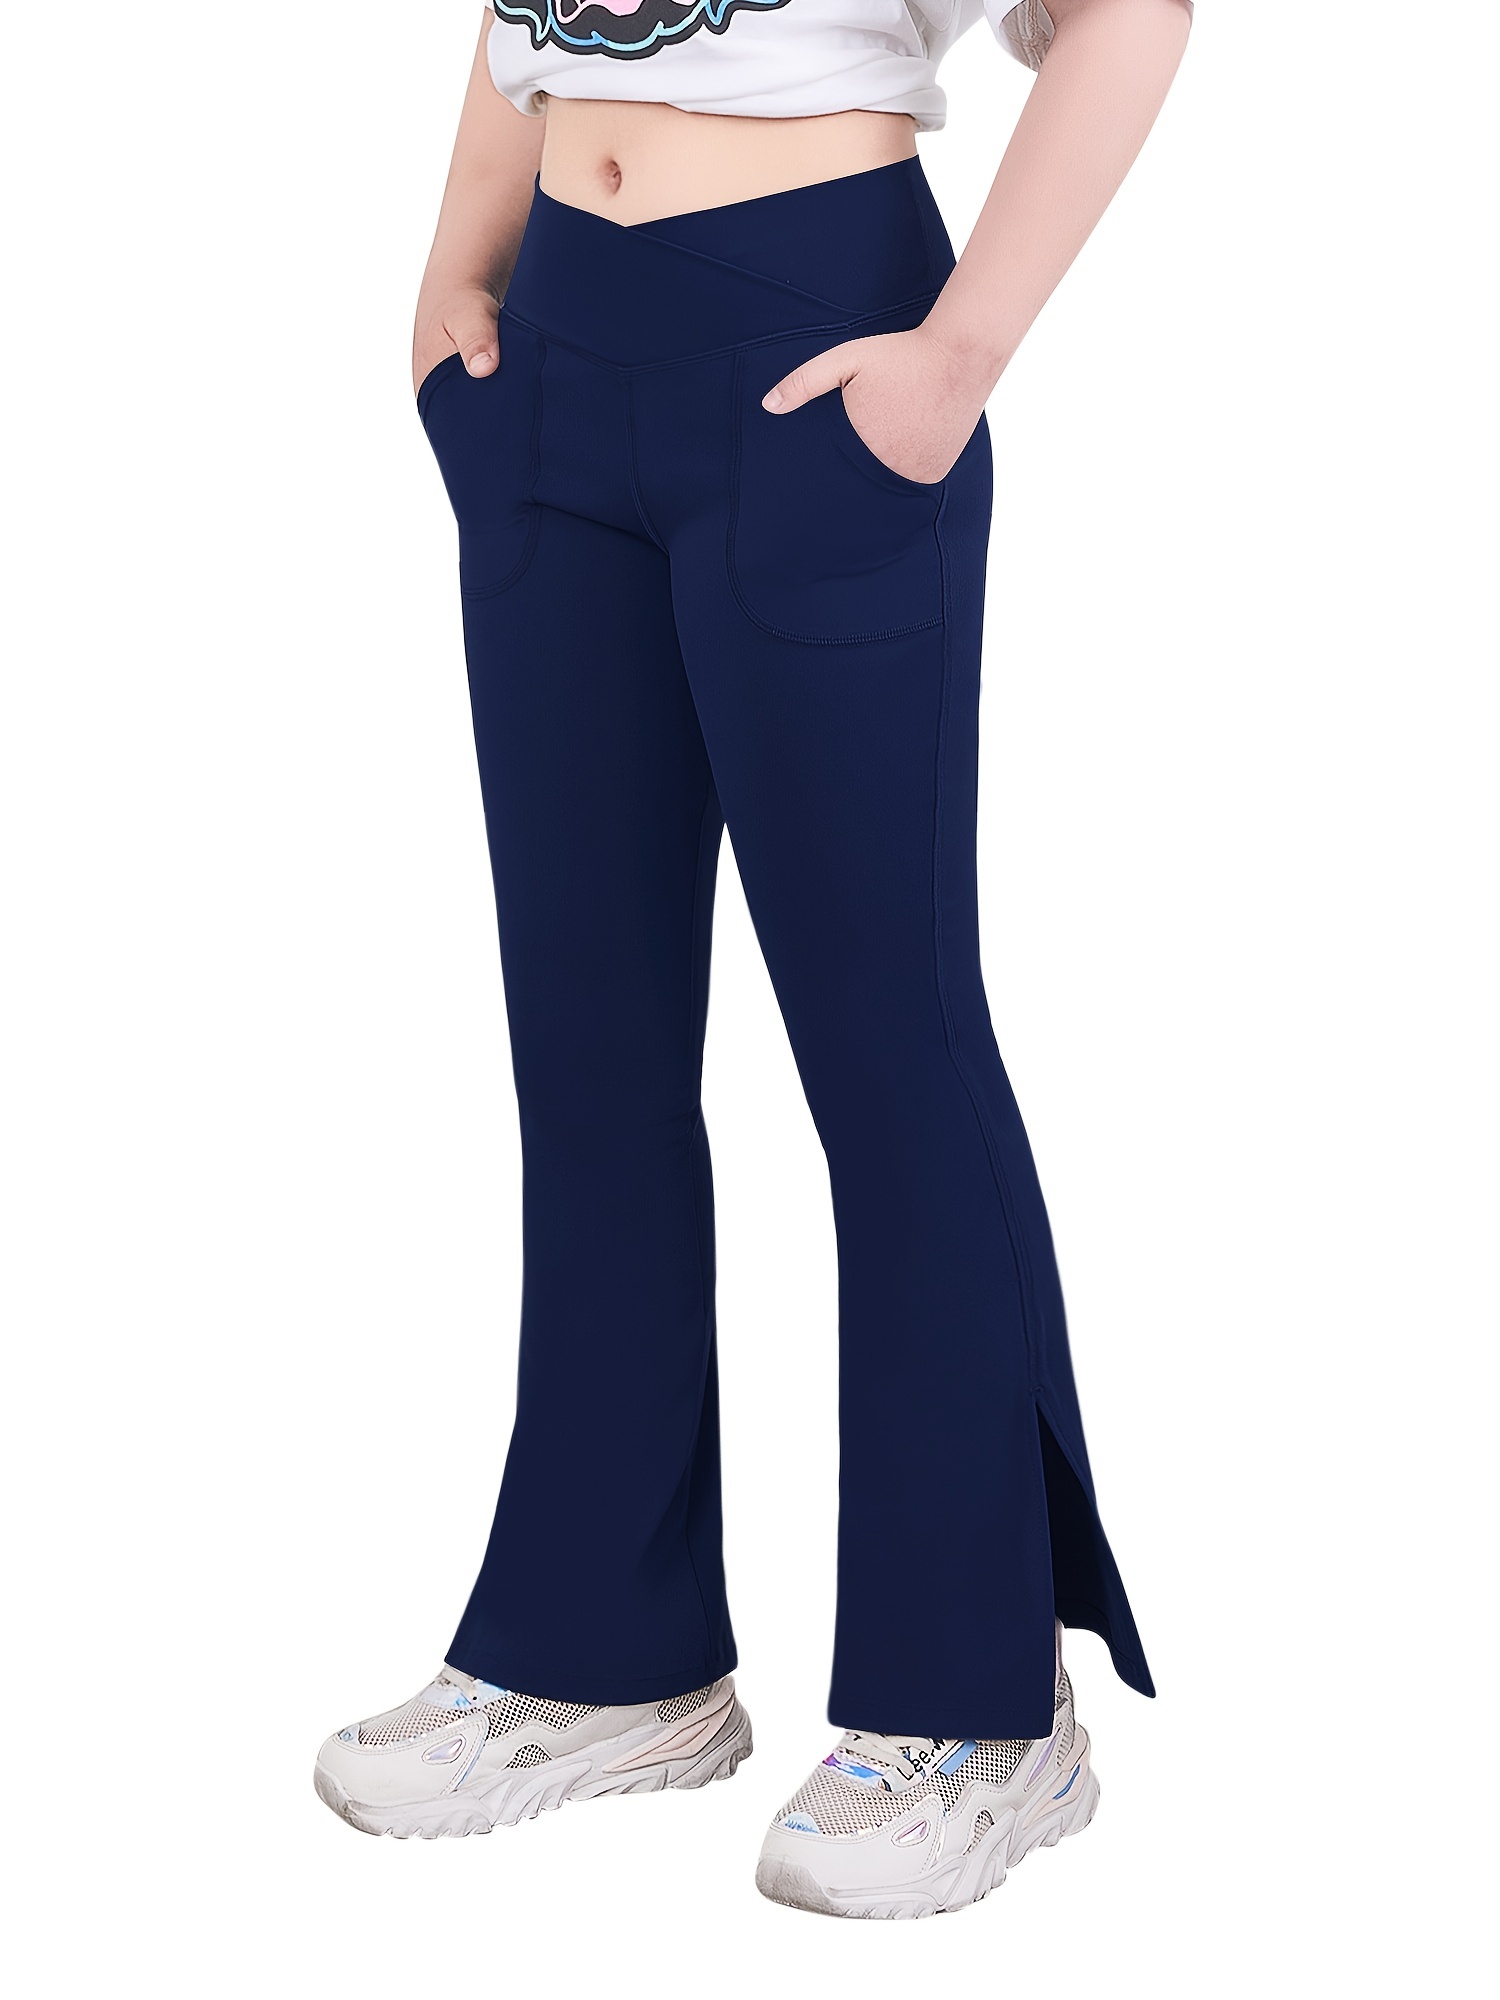 Women's Flared Pants in Dark Blue